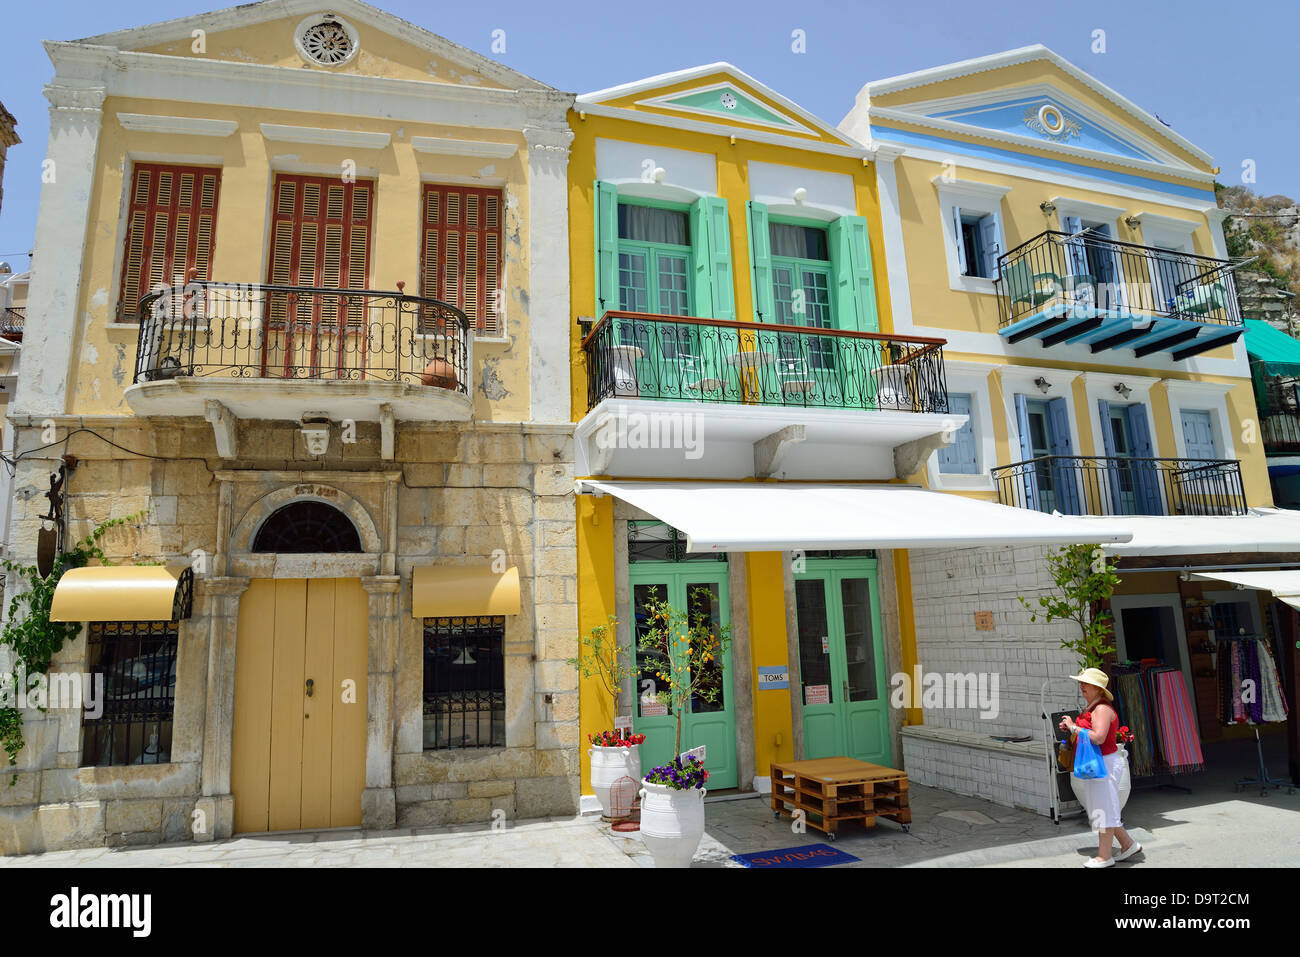 Maisons colorées sur le port, Symi (Simi), le Dodécanèse, région sud de la mer Égée, Grèce Banque D'Images